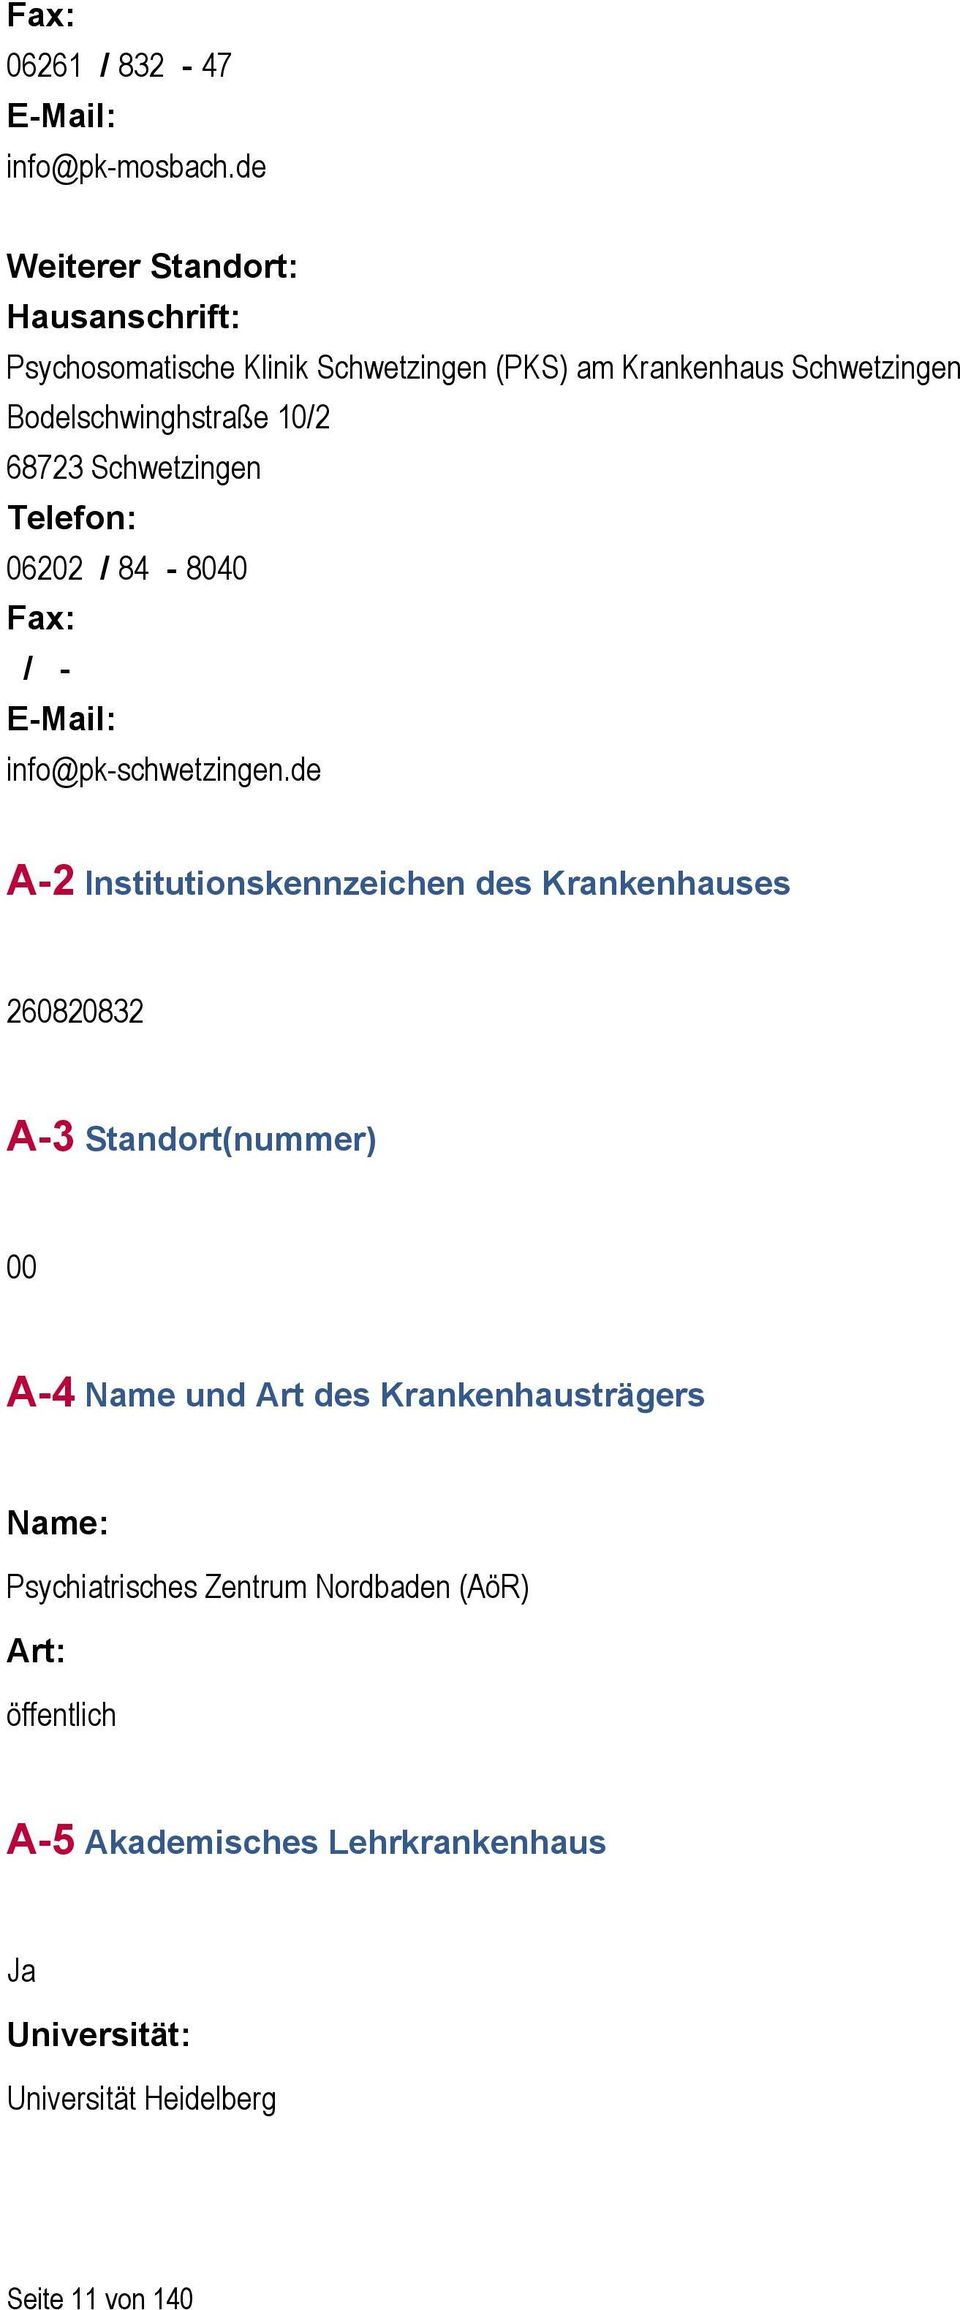 68723 Schwetzingen Telefon: 06202 / 84-8040 Fax: / - E-Mail: info@pk-schwetzingen.